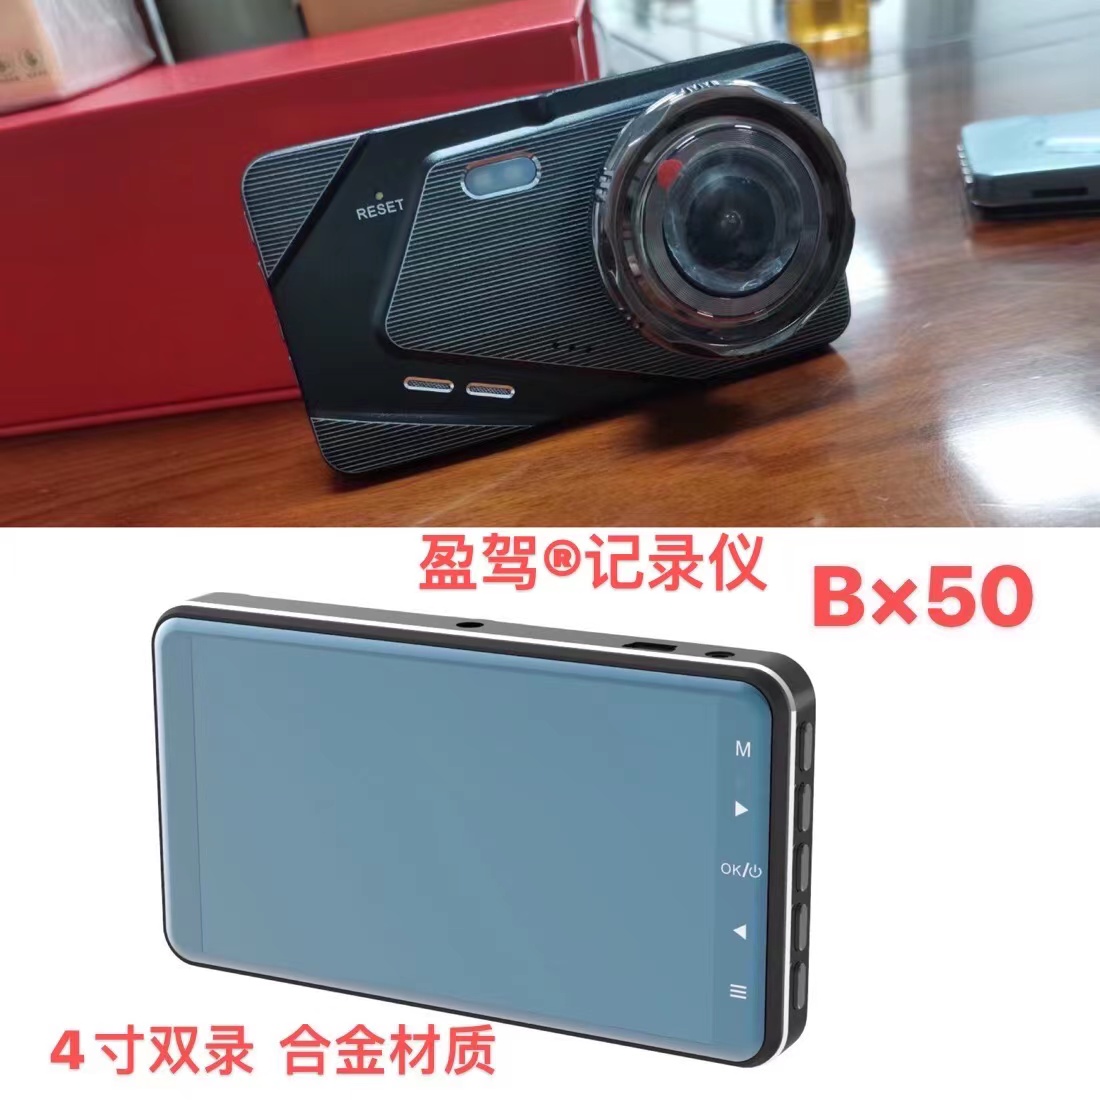 Fahrzeugkamera - Marke YJ - neues Produkt - BX50 wird eingeführt